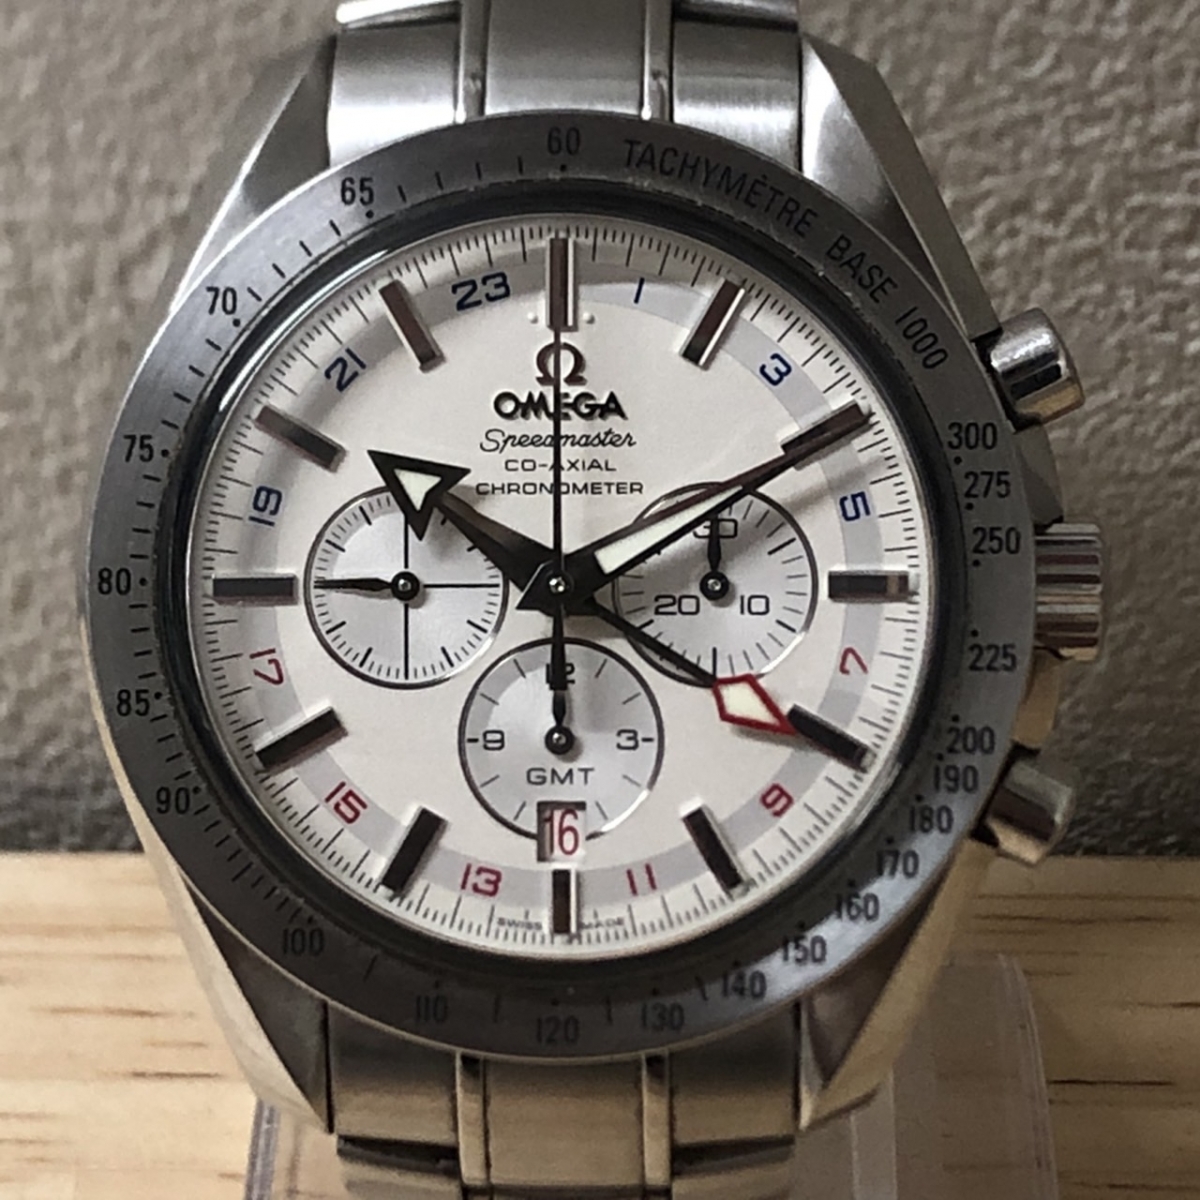 オメガのスピードマスター・ブロード・アロー 3581.30.00 GMTコーアクシャル 自動巻き腕時計 ステンレスの買取実績です。